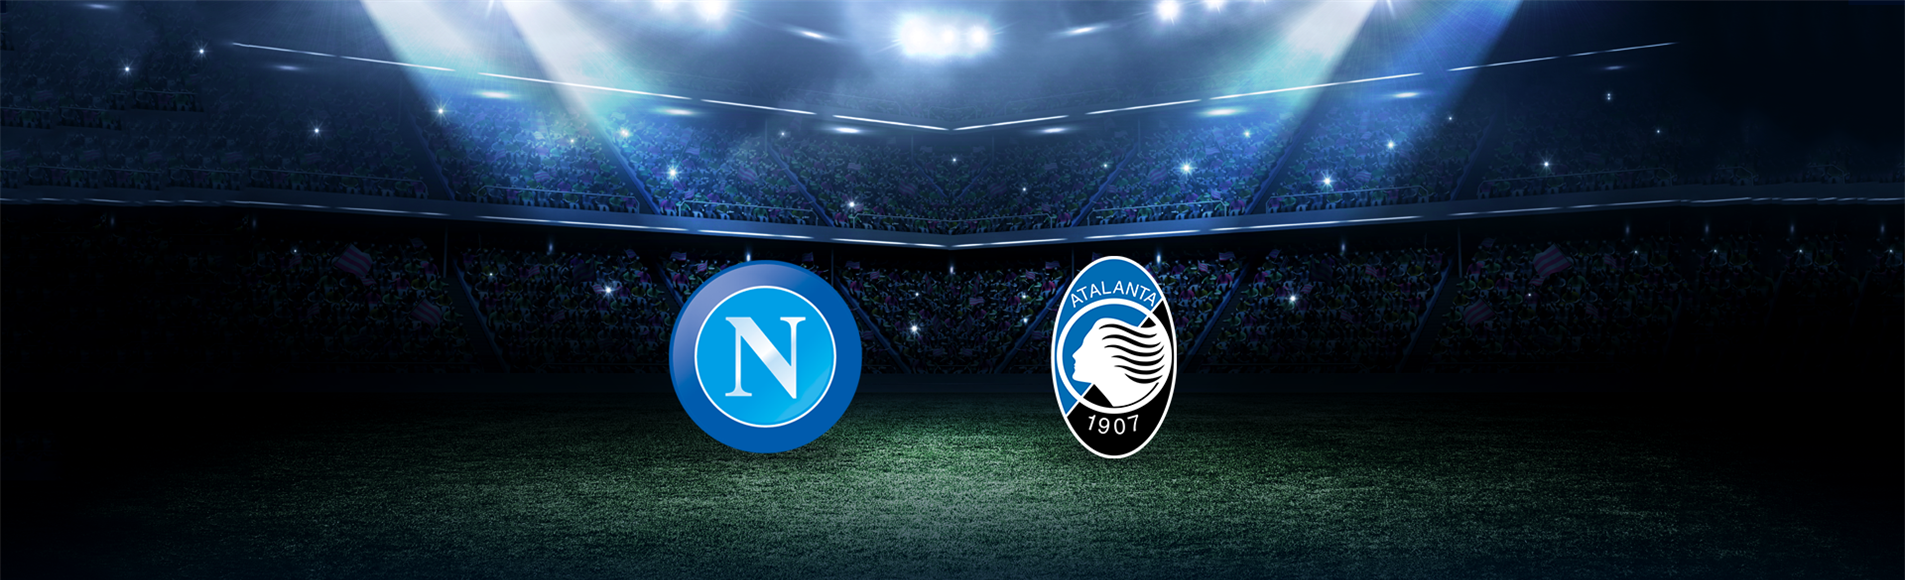 Napoli-Atalanta: dove vedere la partita in tv e diretta streaming - NAPOLI CALCIO